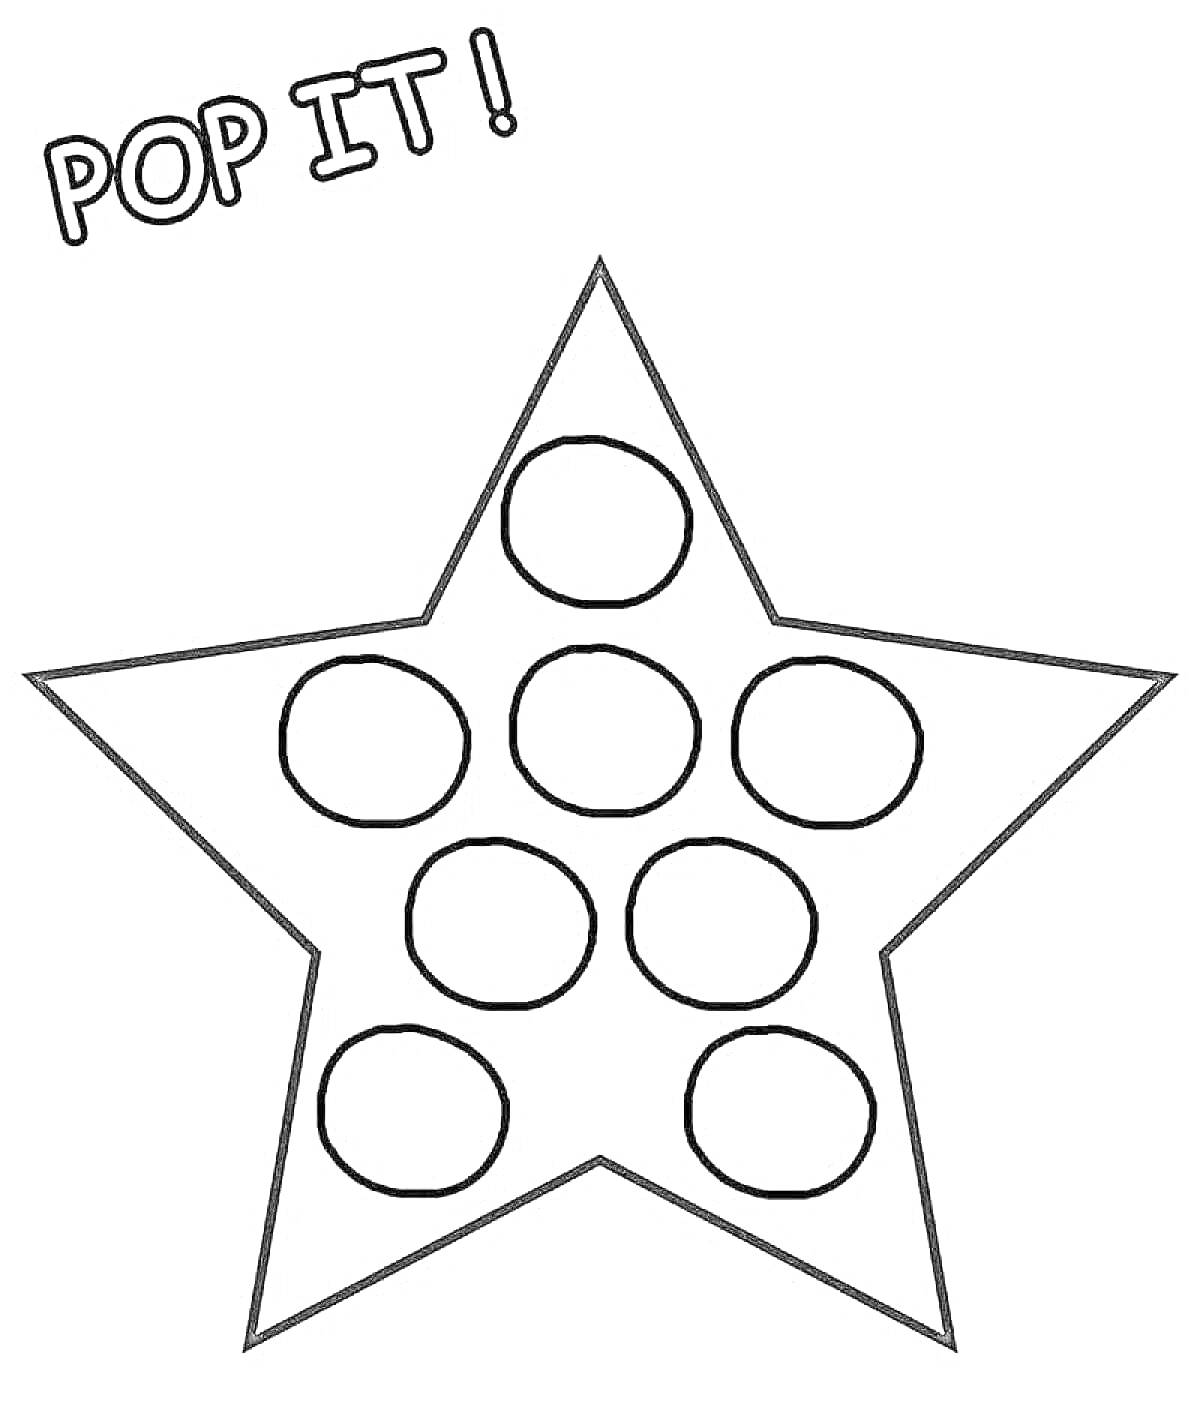 Раскраска Поп ит в форме звезды с девятью кругами